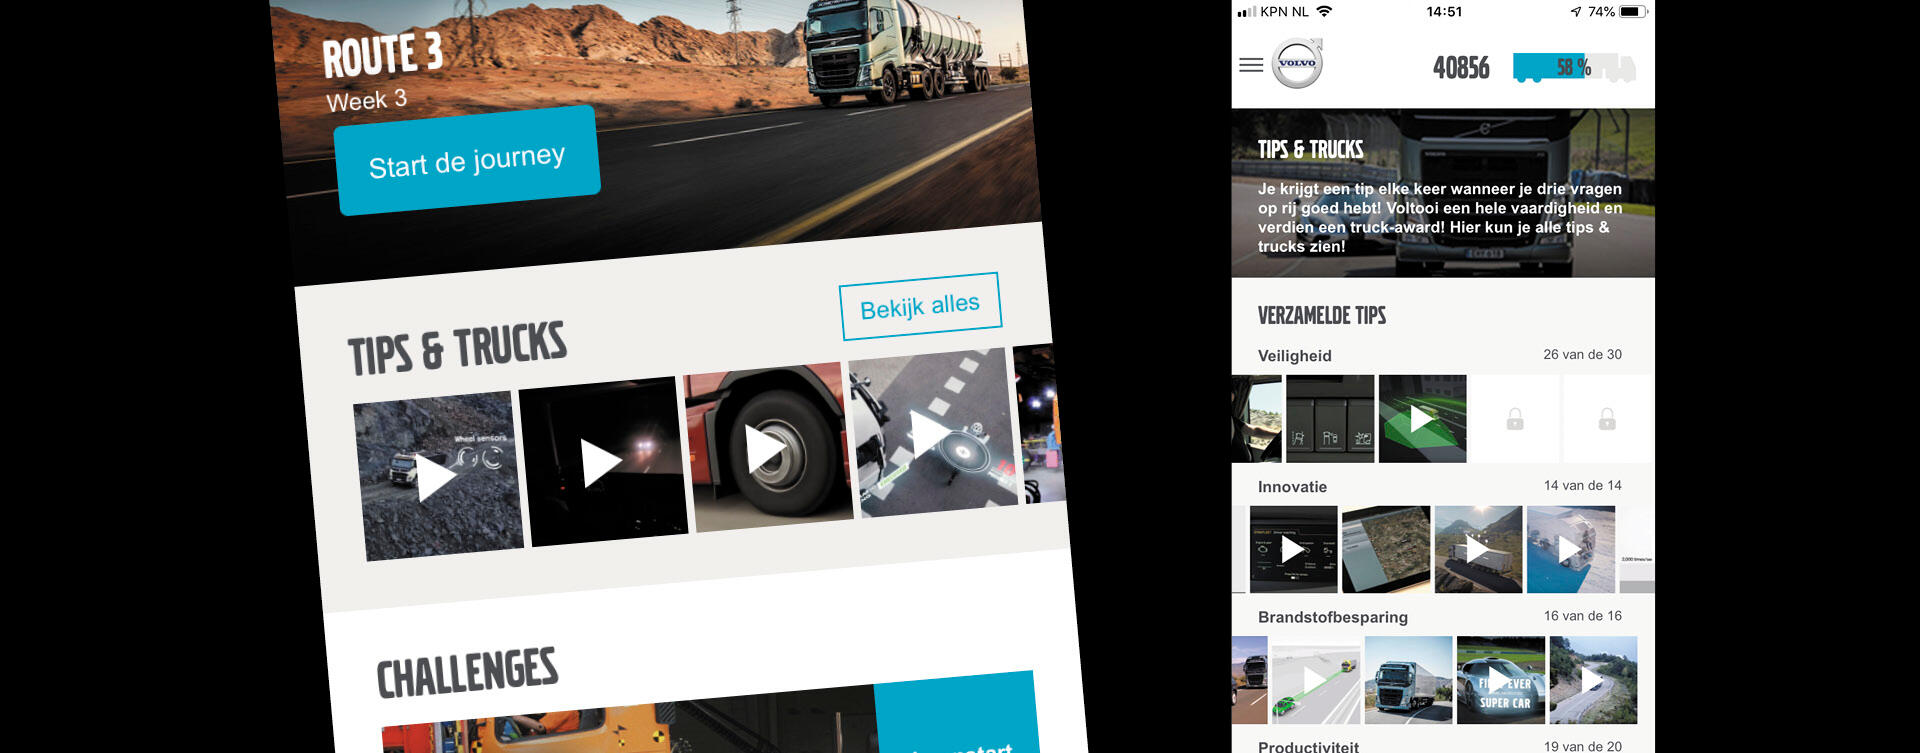 Truck Start App helpt chauffeur op weg met nieuwe Volvo-truck